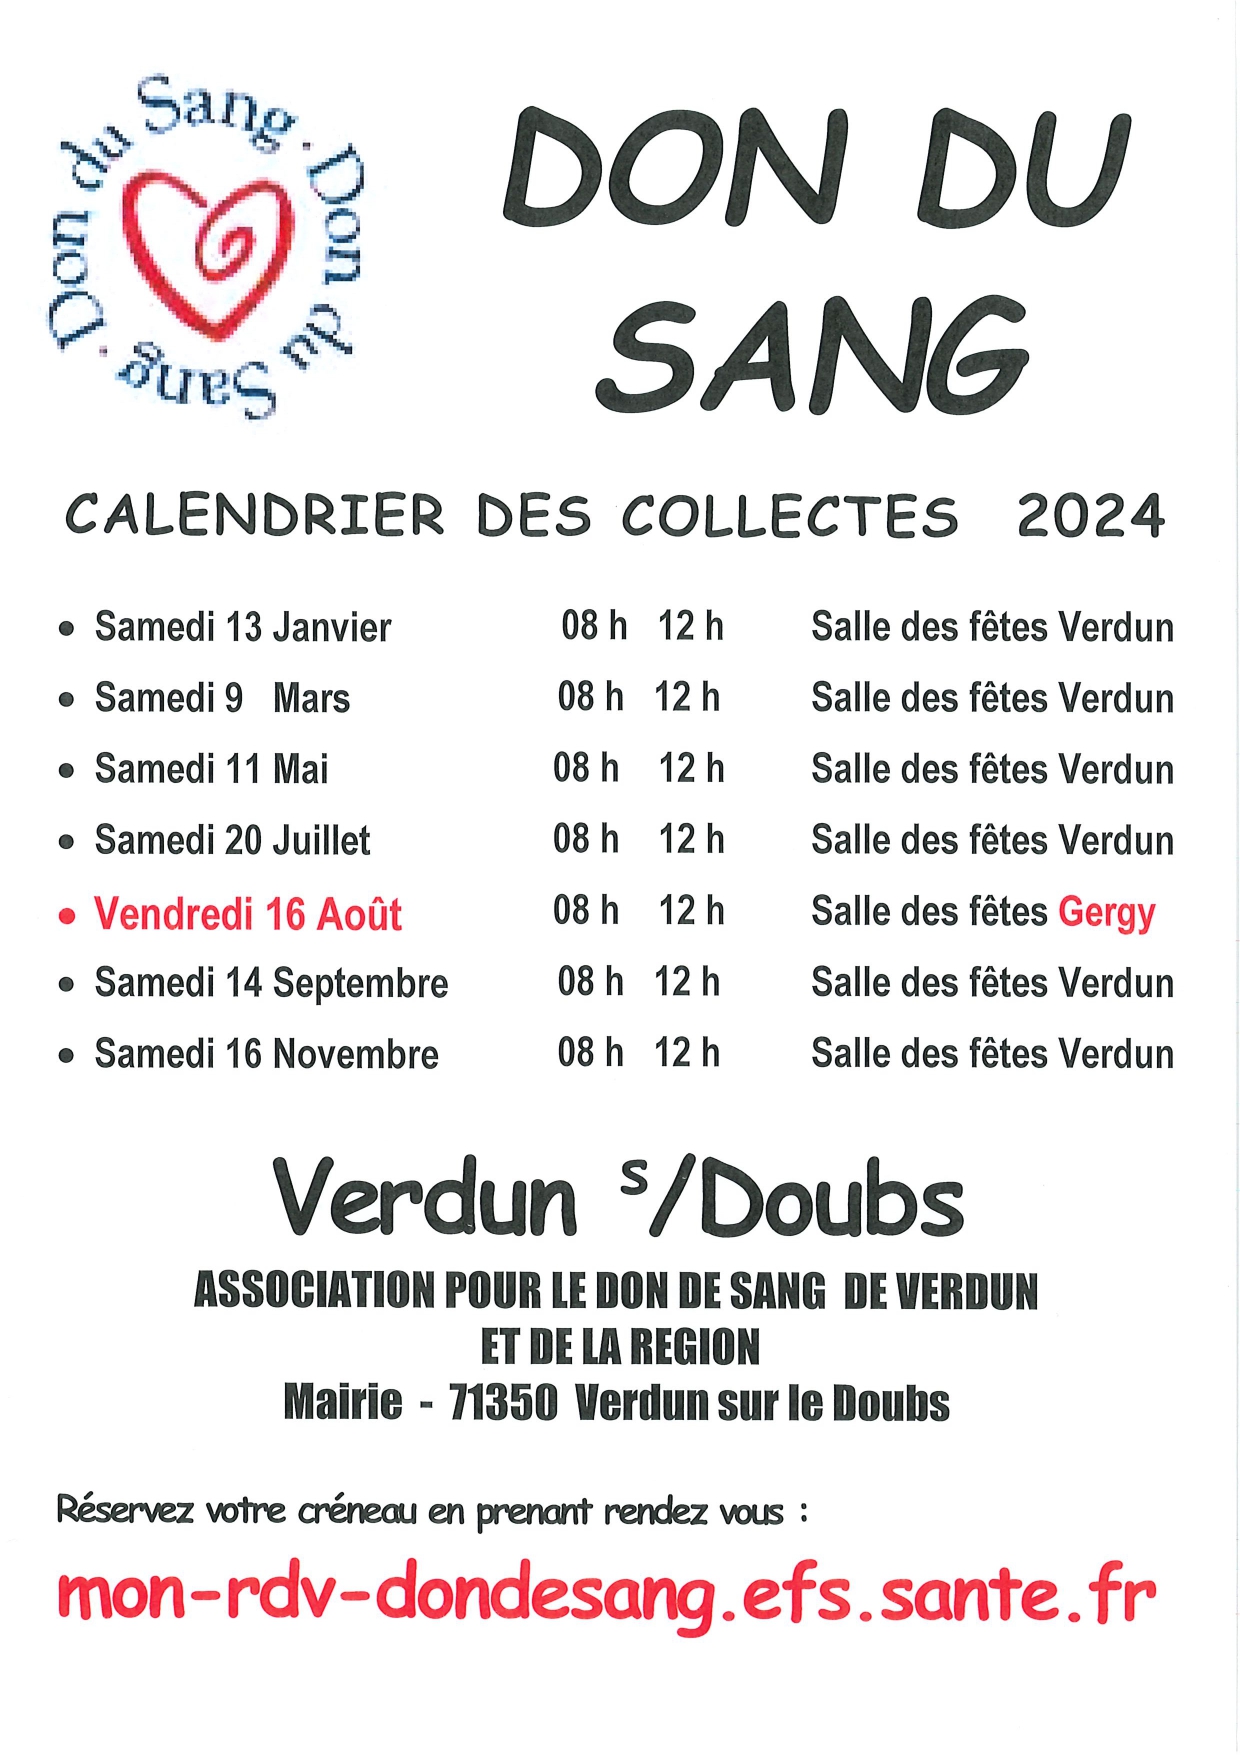 Verdun/Doubs - Don du sang - calendrier 2024